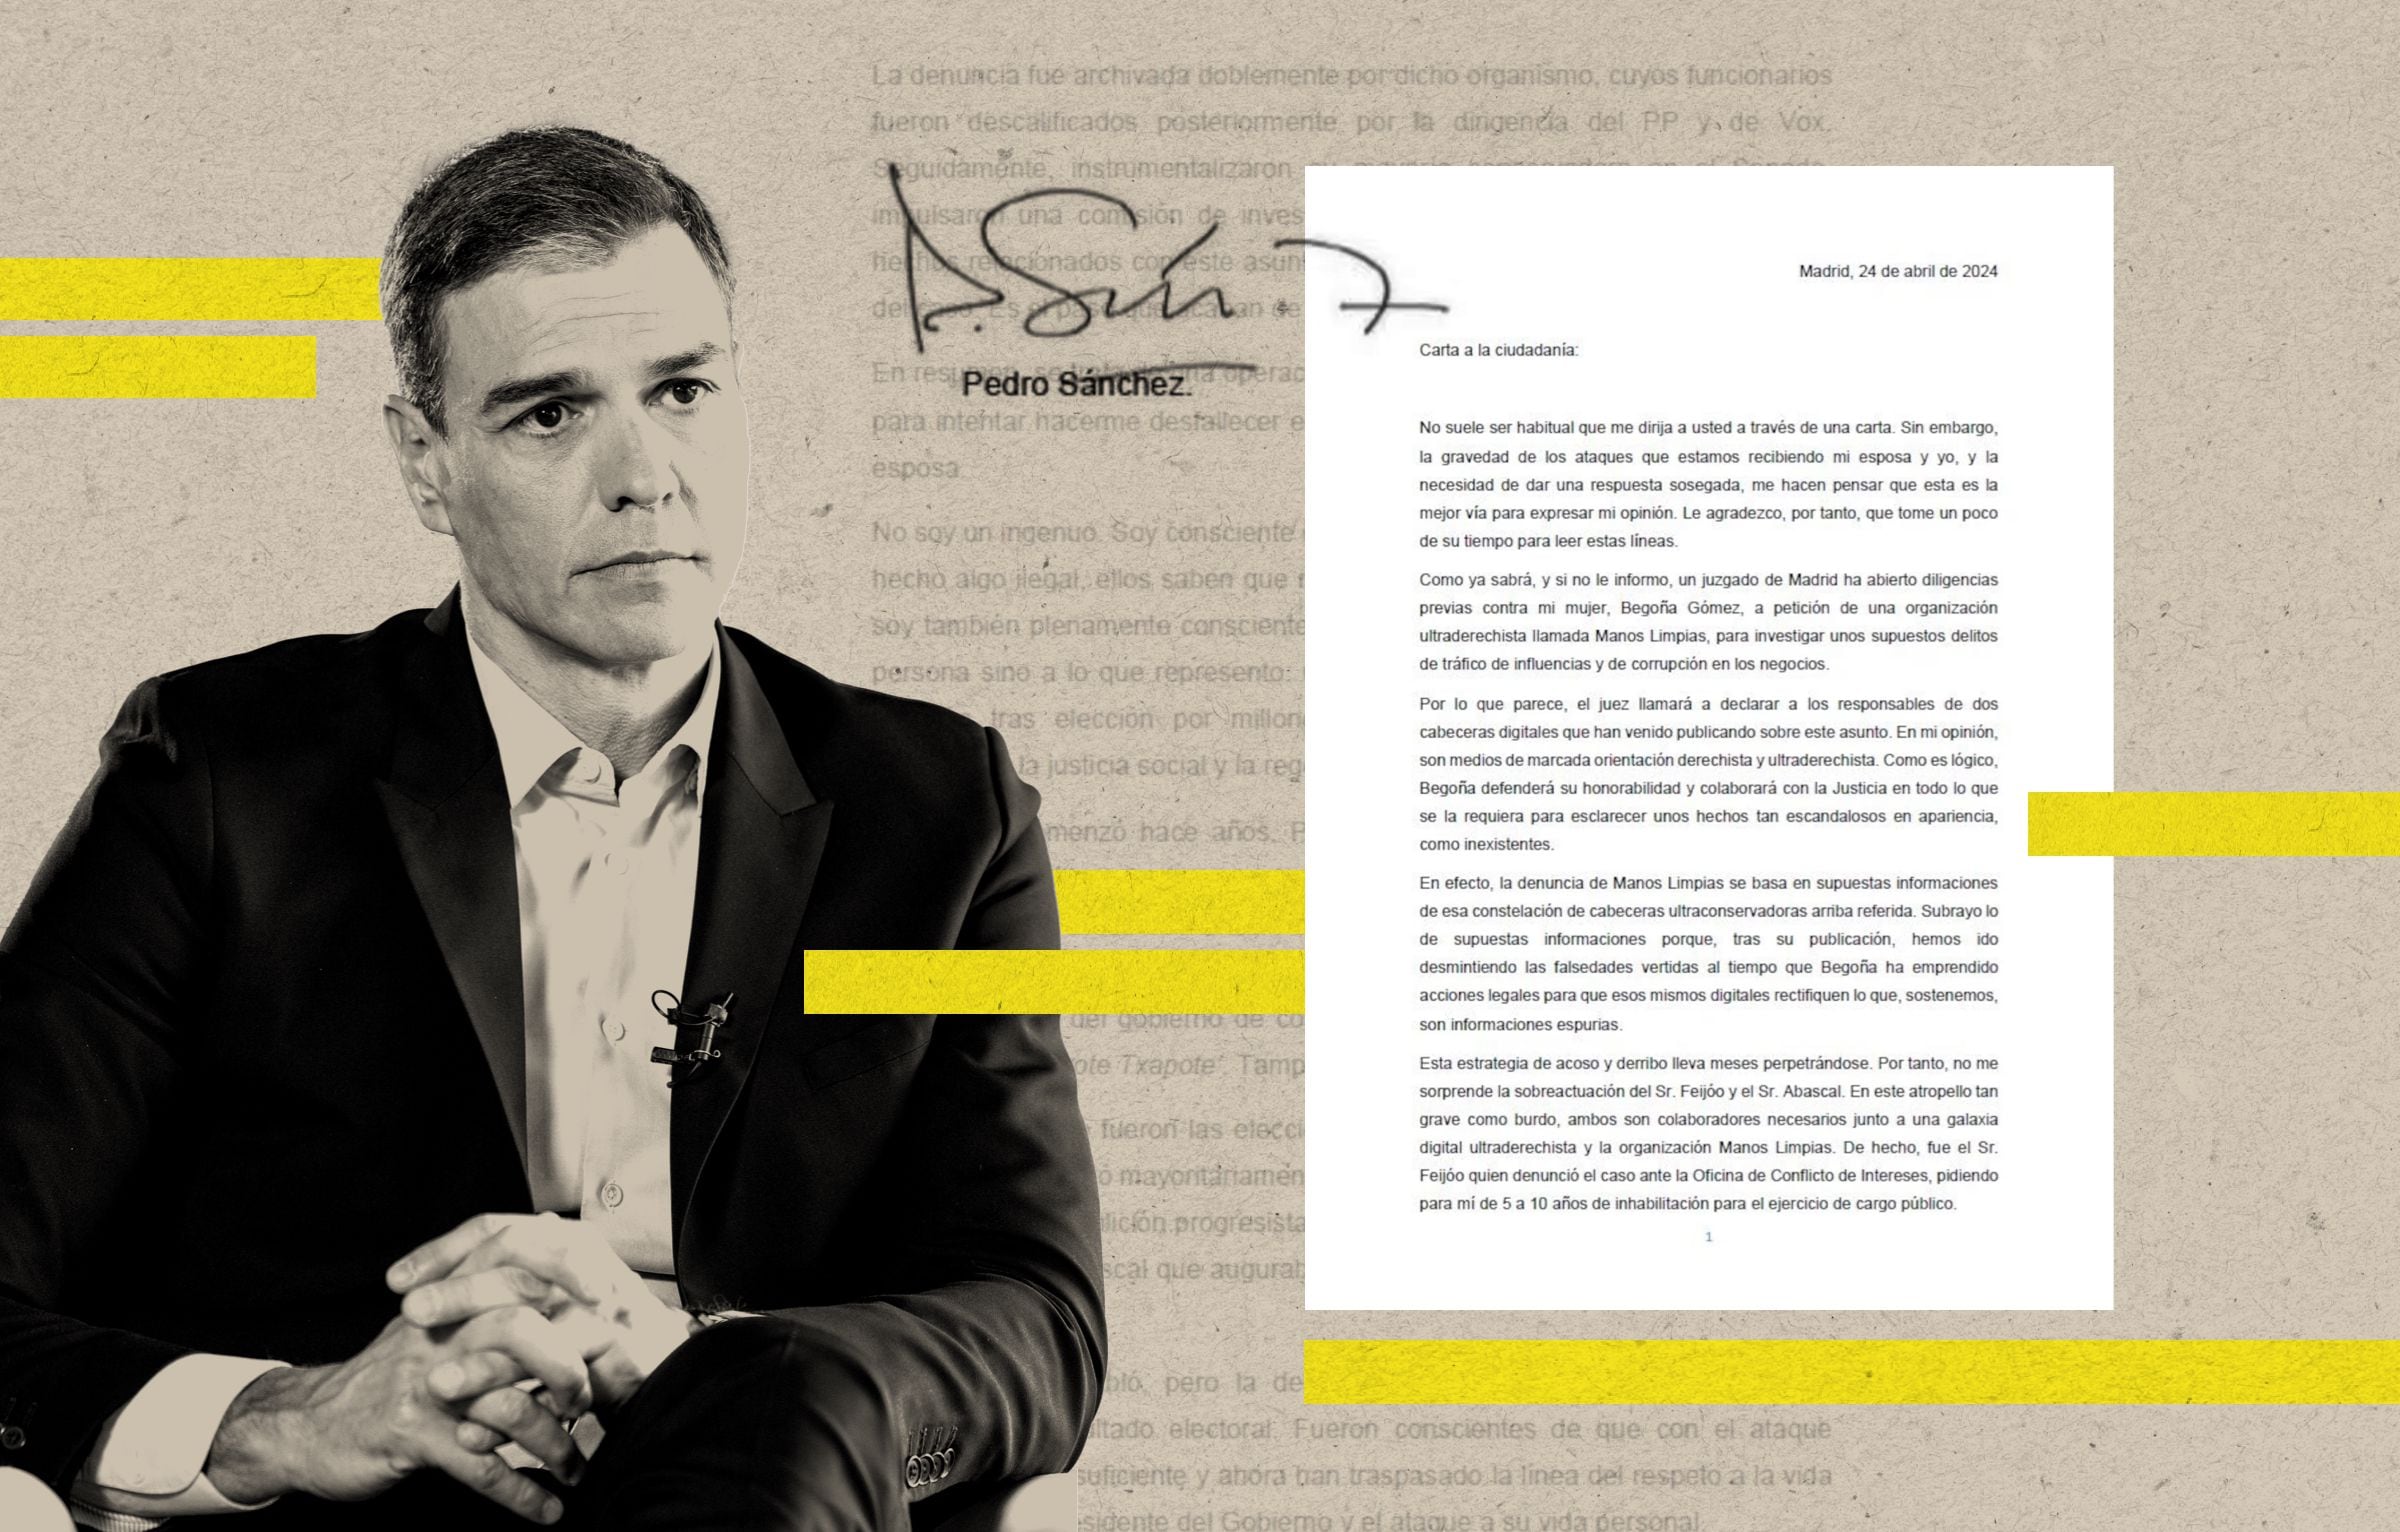 La carta de Sánchez en 10 claves: Del cisma del PSOE a Ayuso y la “máquina del fango” de Umberto Eco